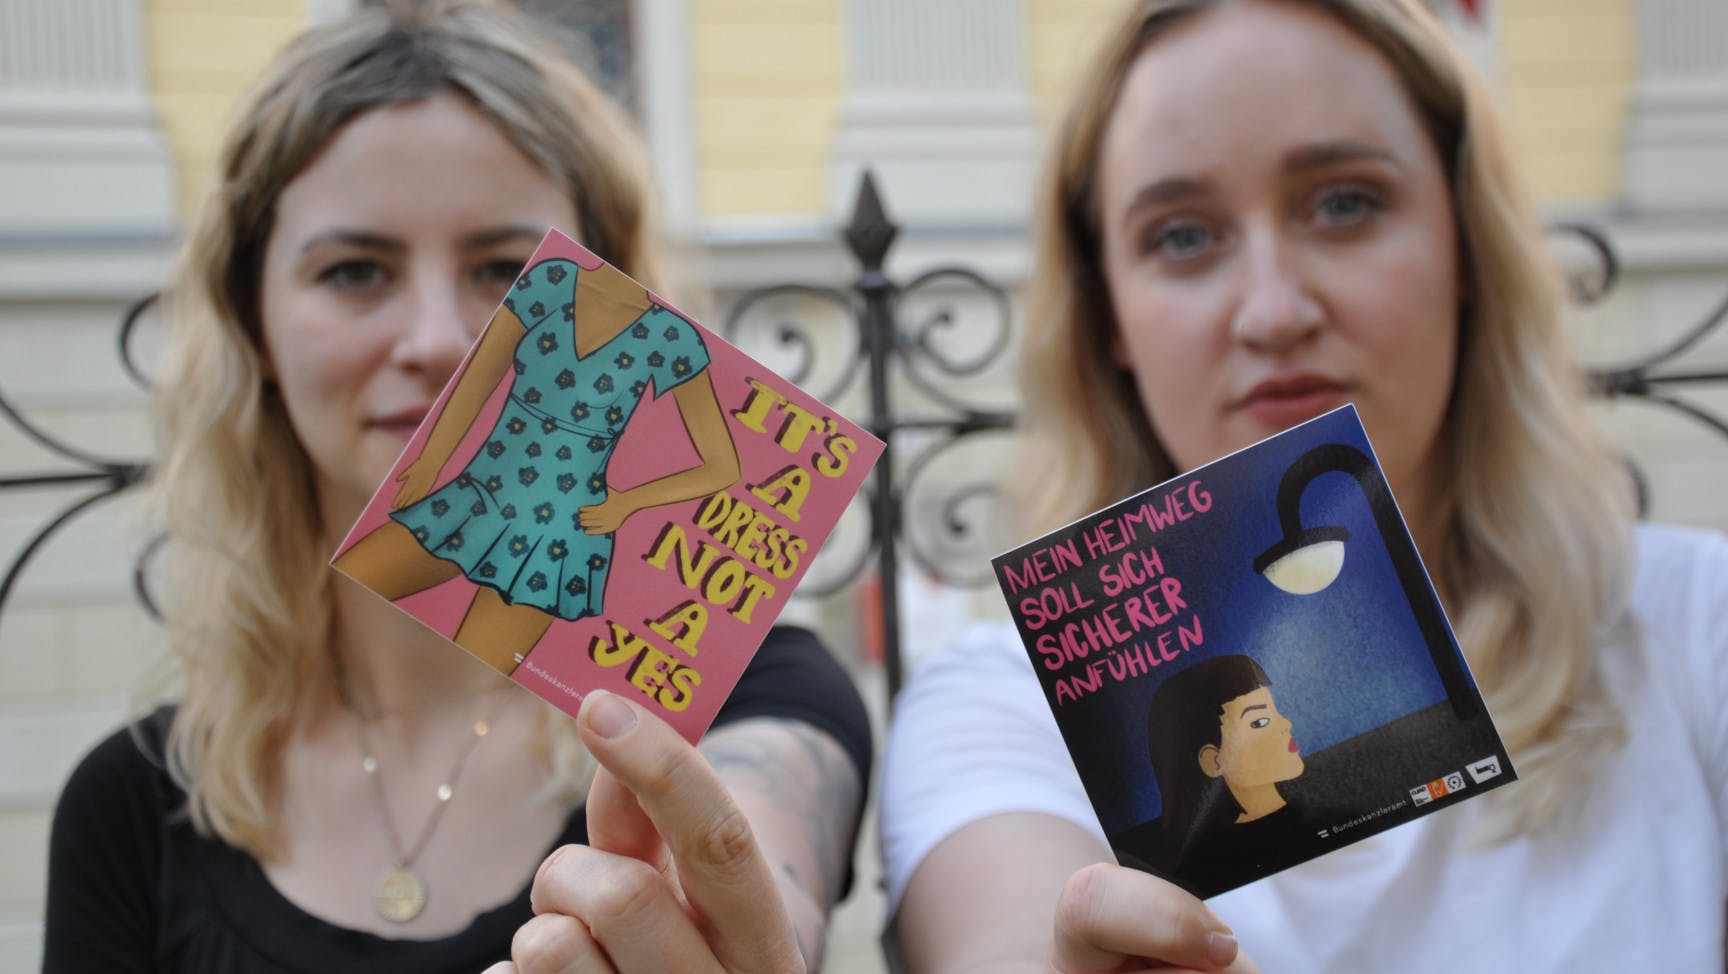 Zwei junge Frauen halten jeweils einen Sticker in die Kamera.